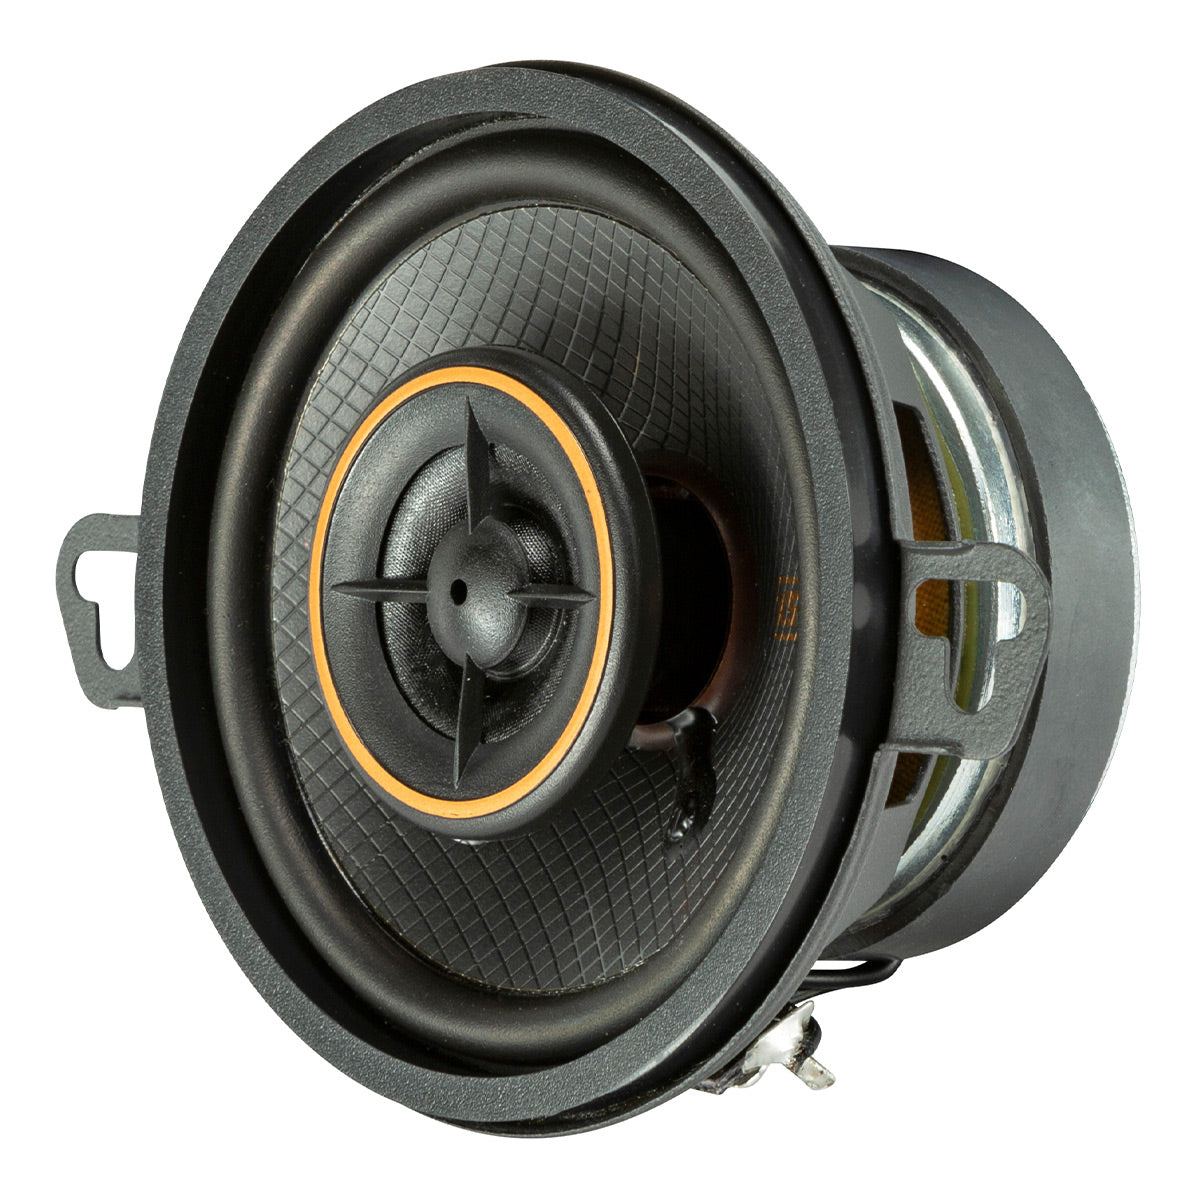 Kicker 51KSC3504 3.5" KS Series Coaxial Speakers - Pair